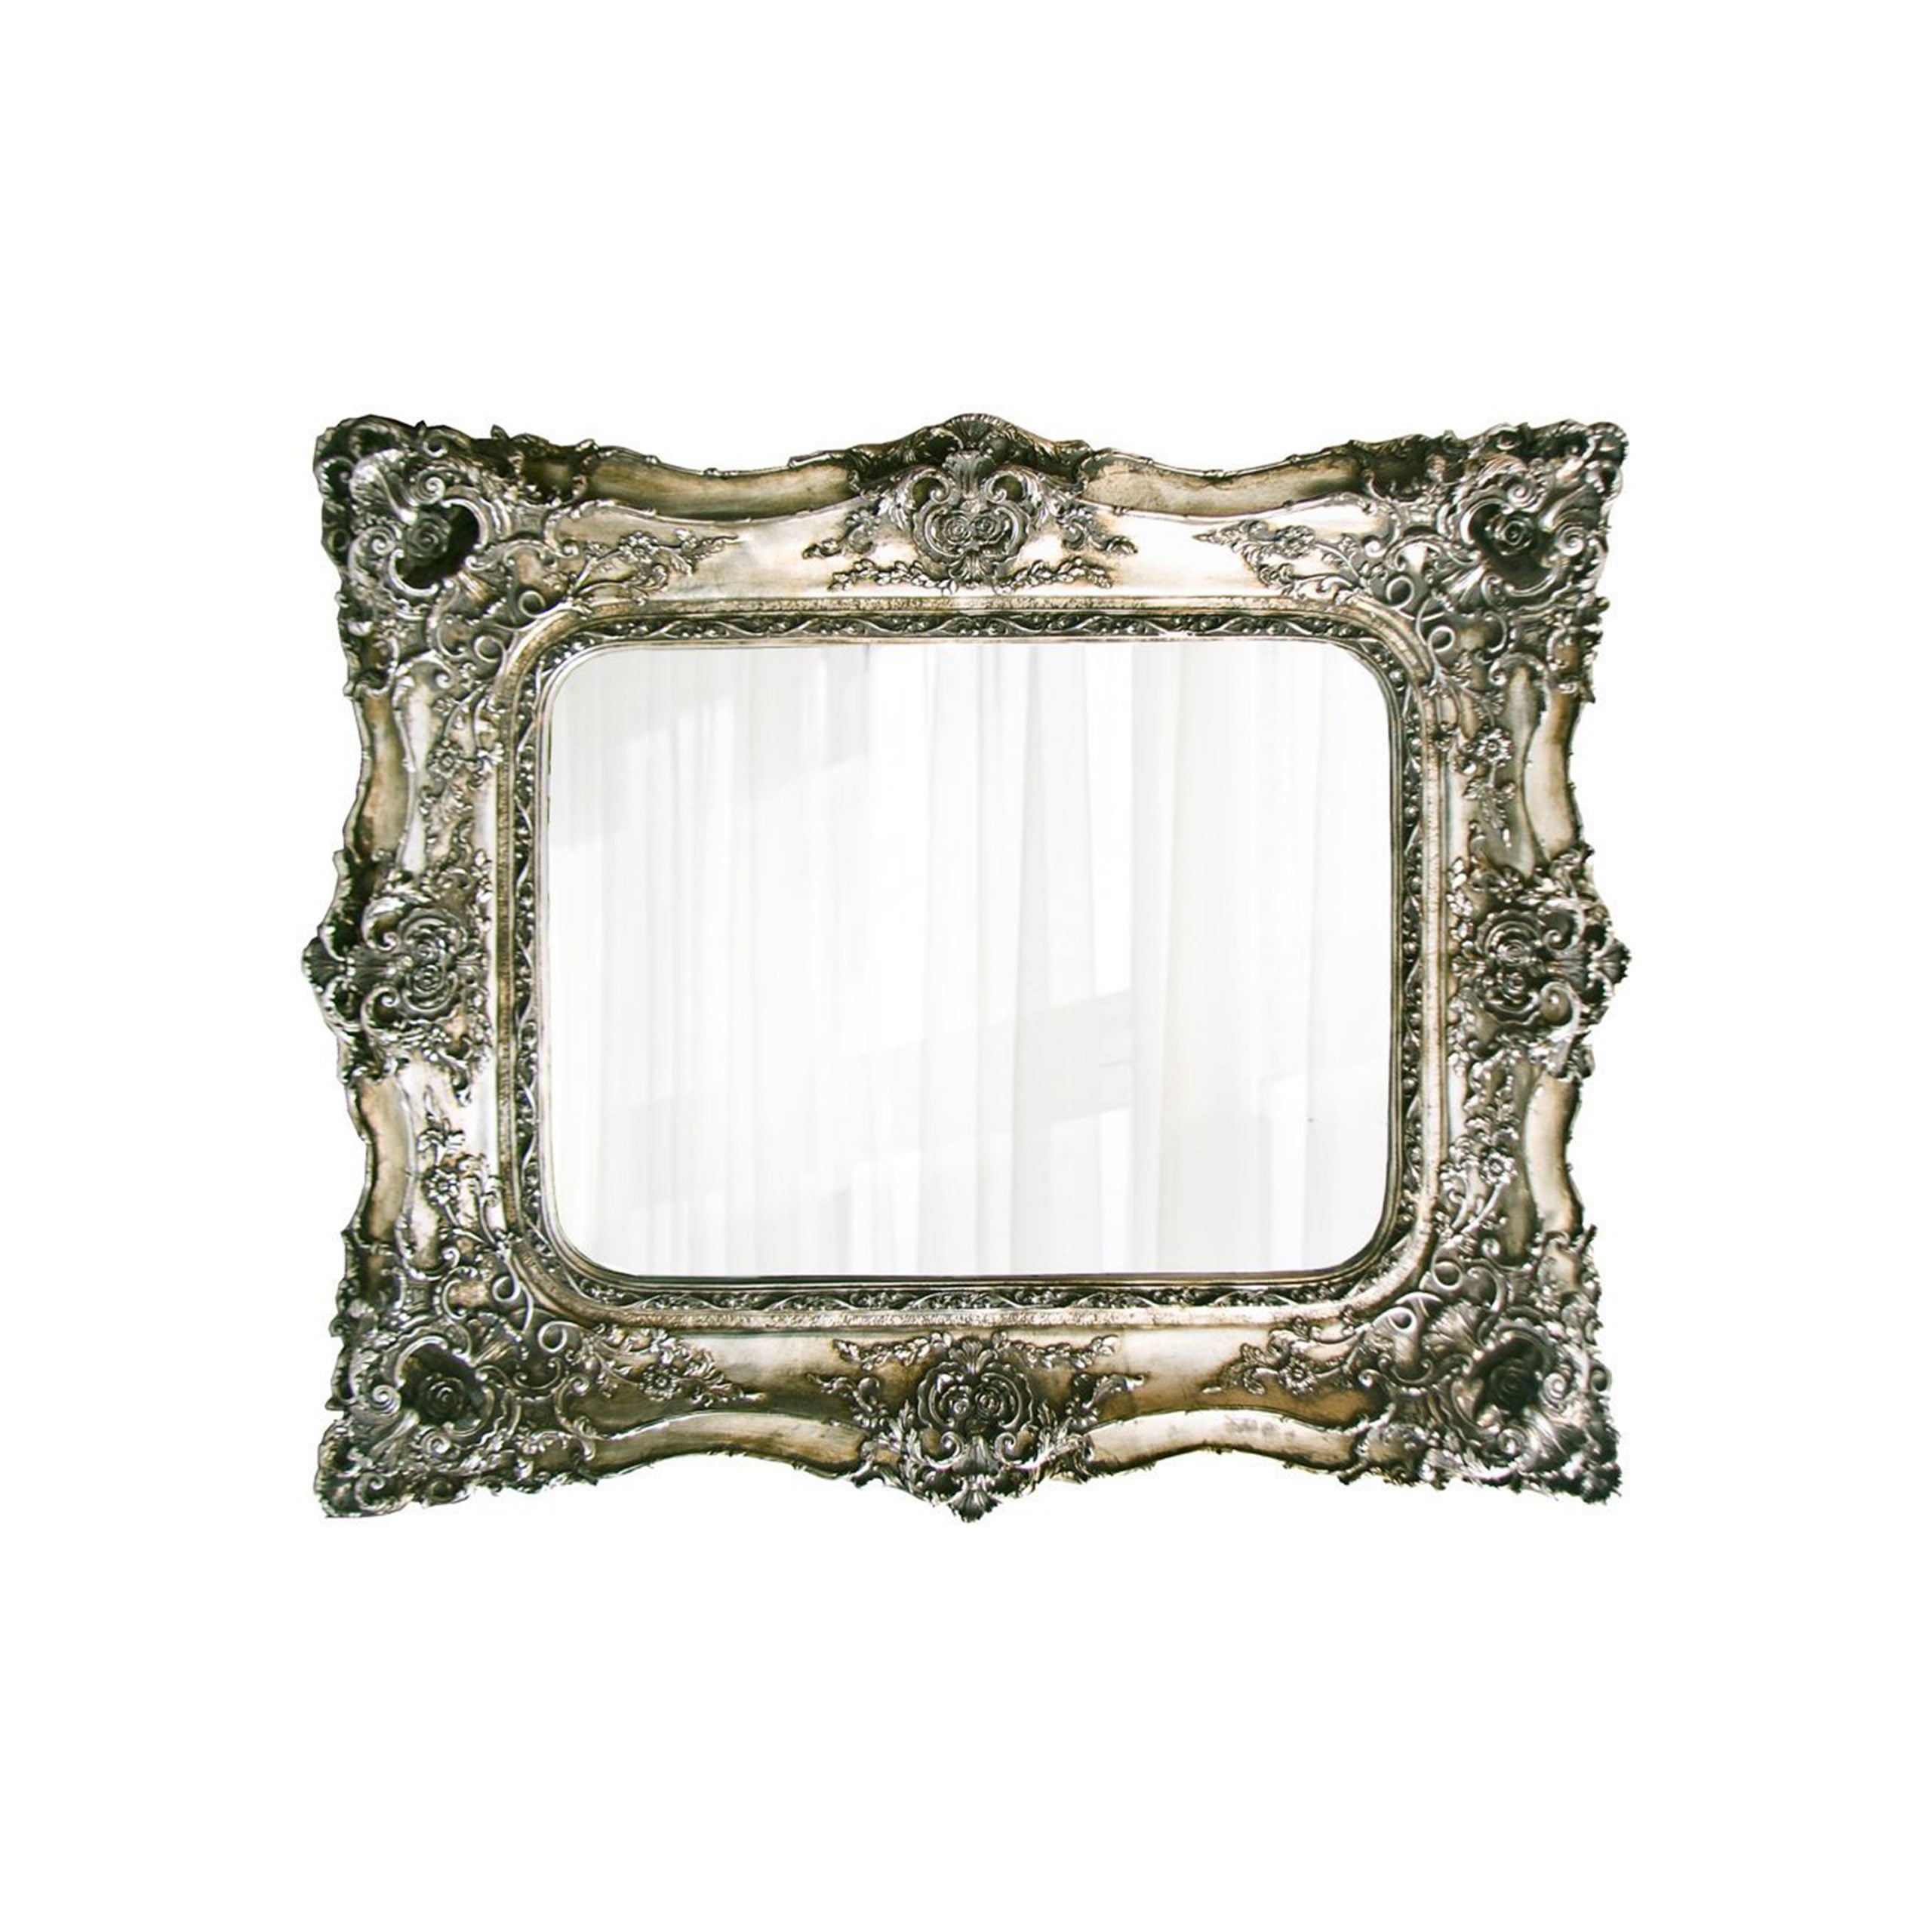 Silver rectangular mirror